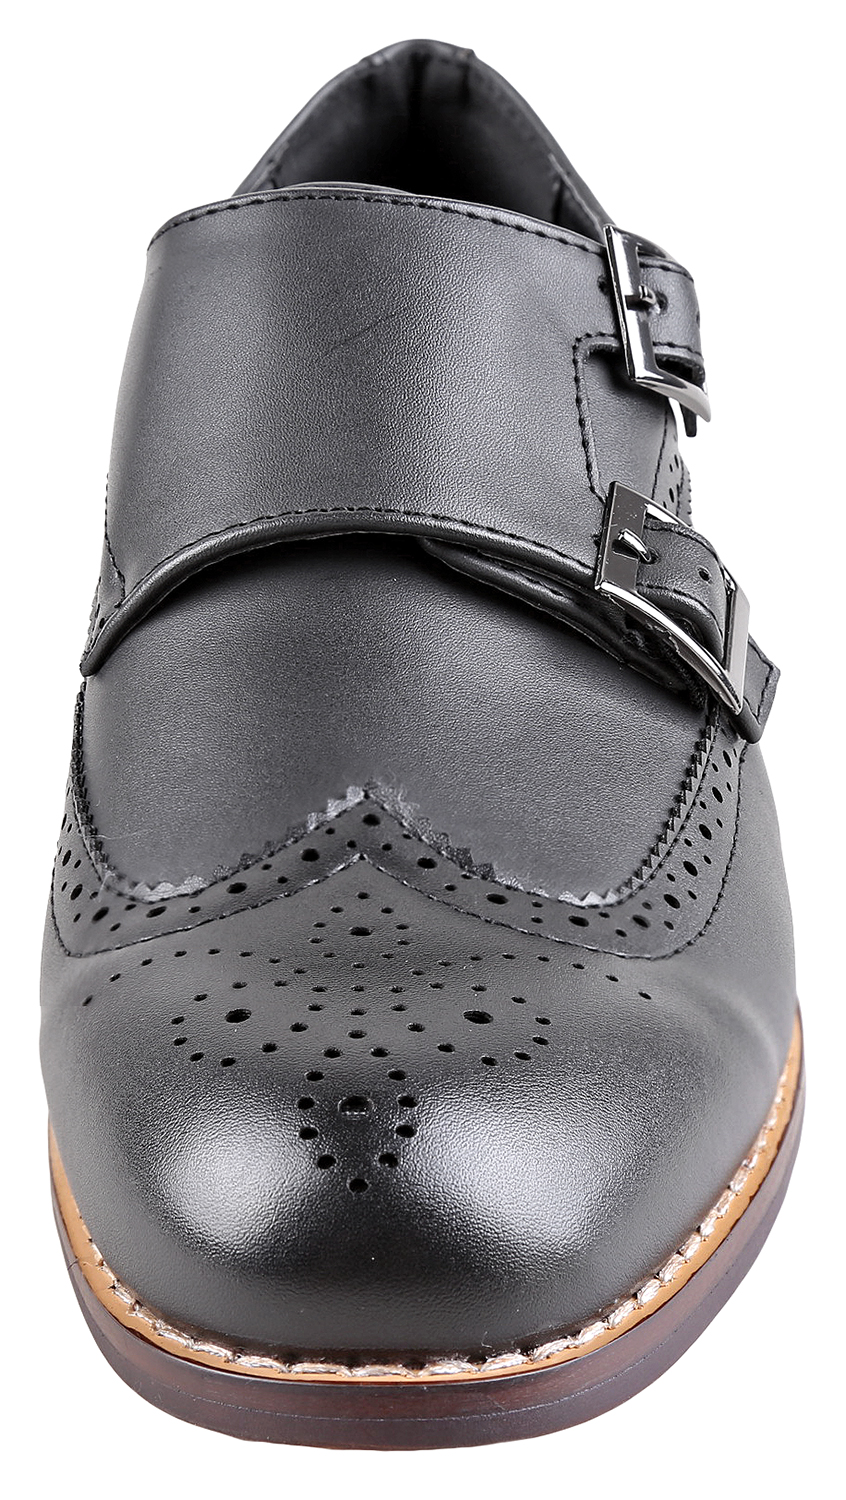 Urban Fox Allen Men's Dress Shoe | Double Monk Strap | Brogue | Wingtip Shoes for Men | Black 12 M US - image 3 of 7